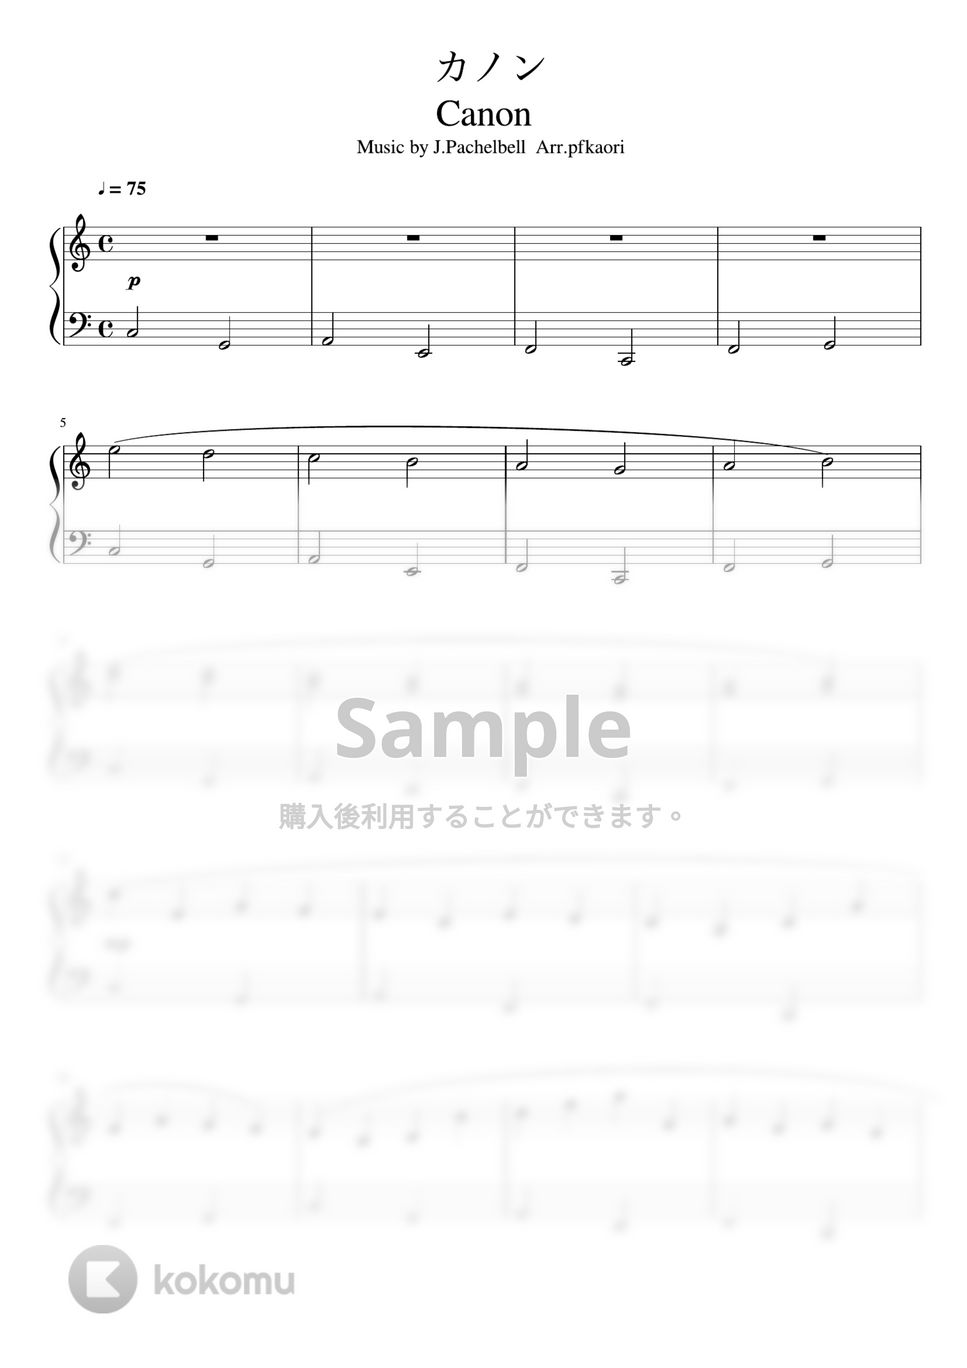 パッヘルベル - カノン (Cdur・ピアノソロ初級) by pfkaori